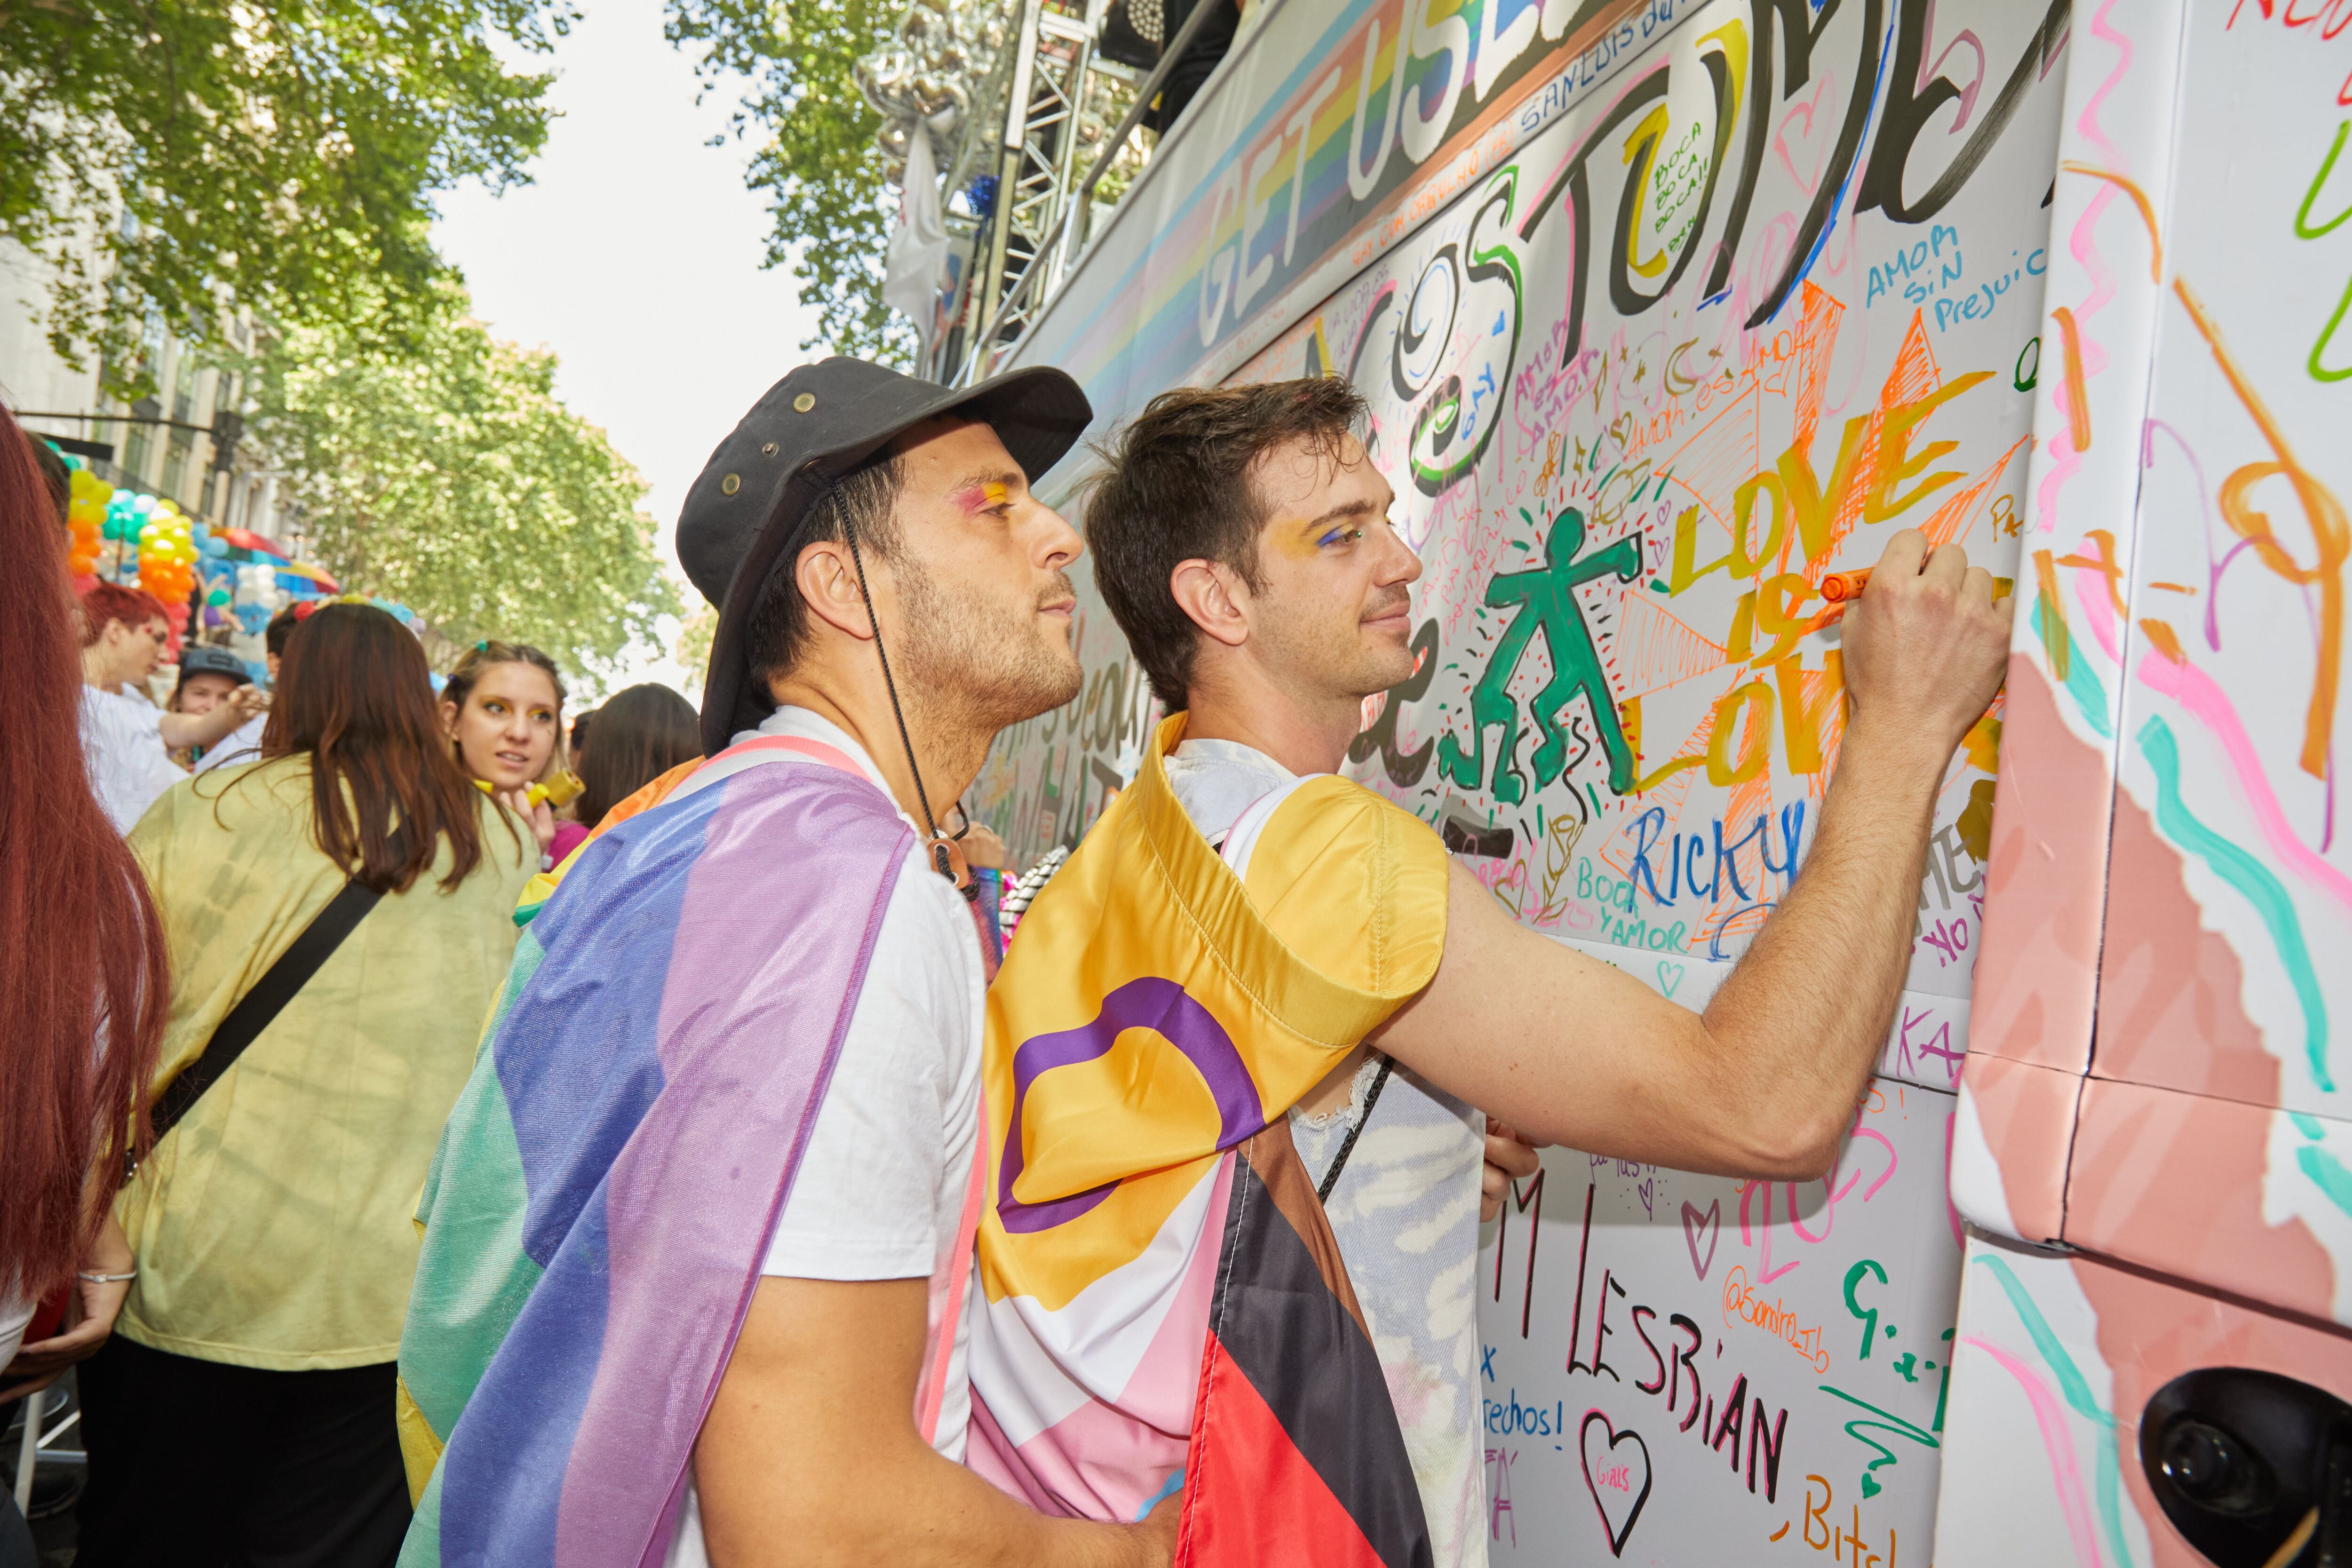 El apoyo a la diversidad y al movimiento LGBTIQ+ forma parte de la historia de JPG. Además de haber colaborado con distintas organizaciones que luchan por los derechos de la comunidad, Jean Paul Gaultier es reconocido por subvertir los estereotipos de género.